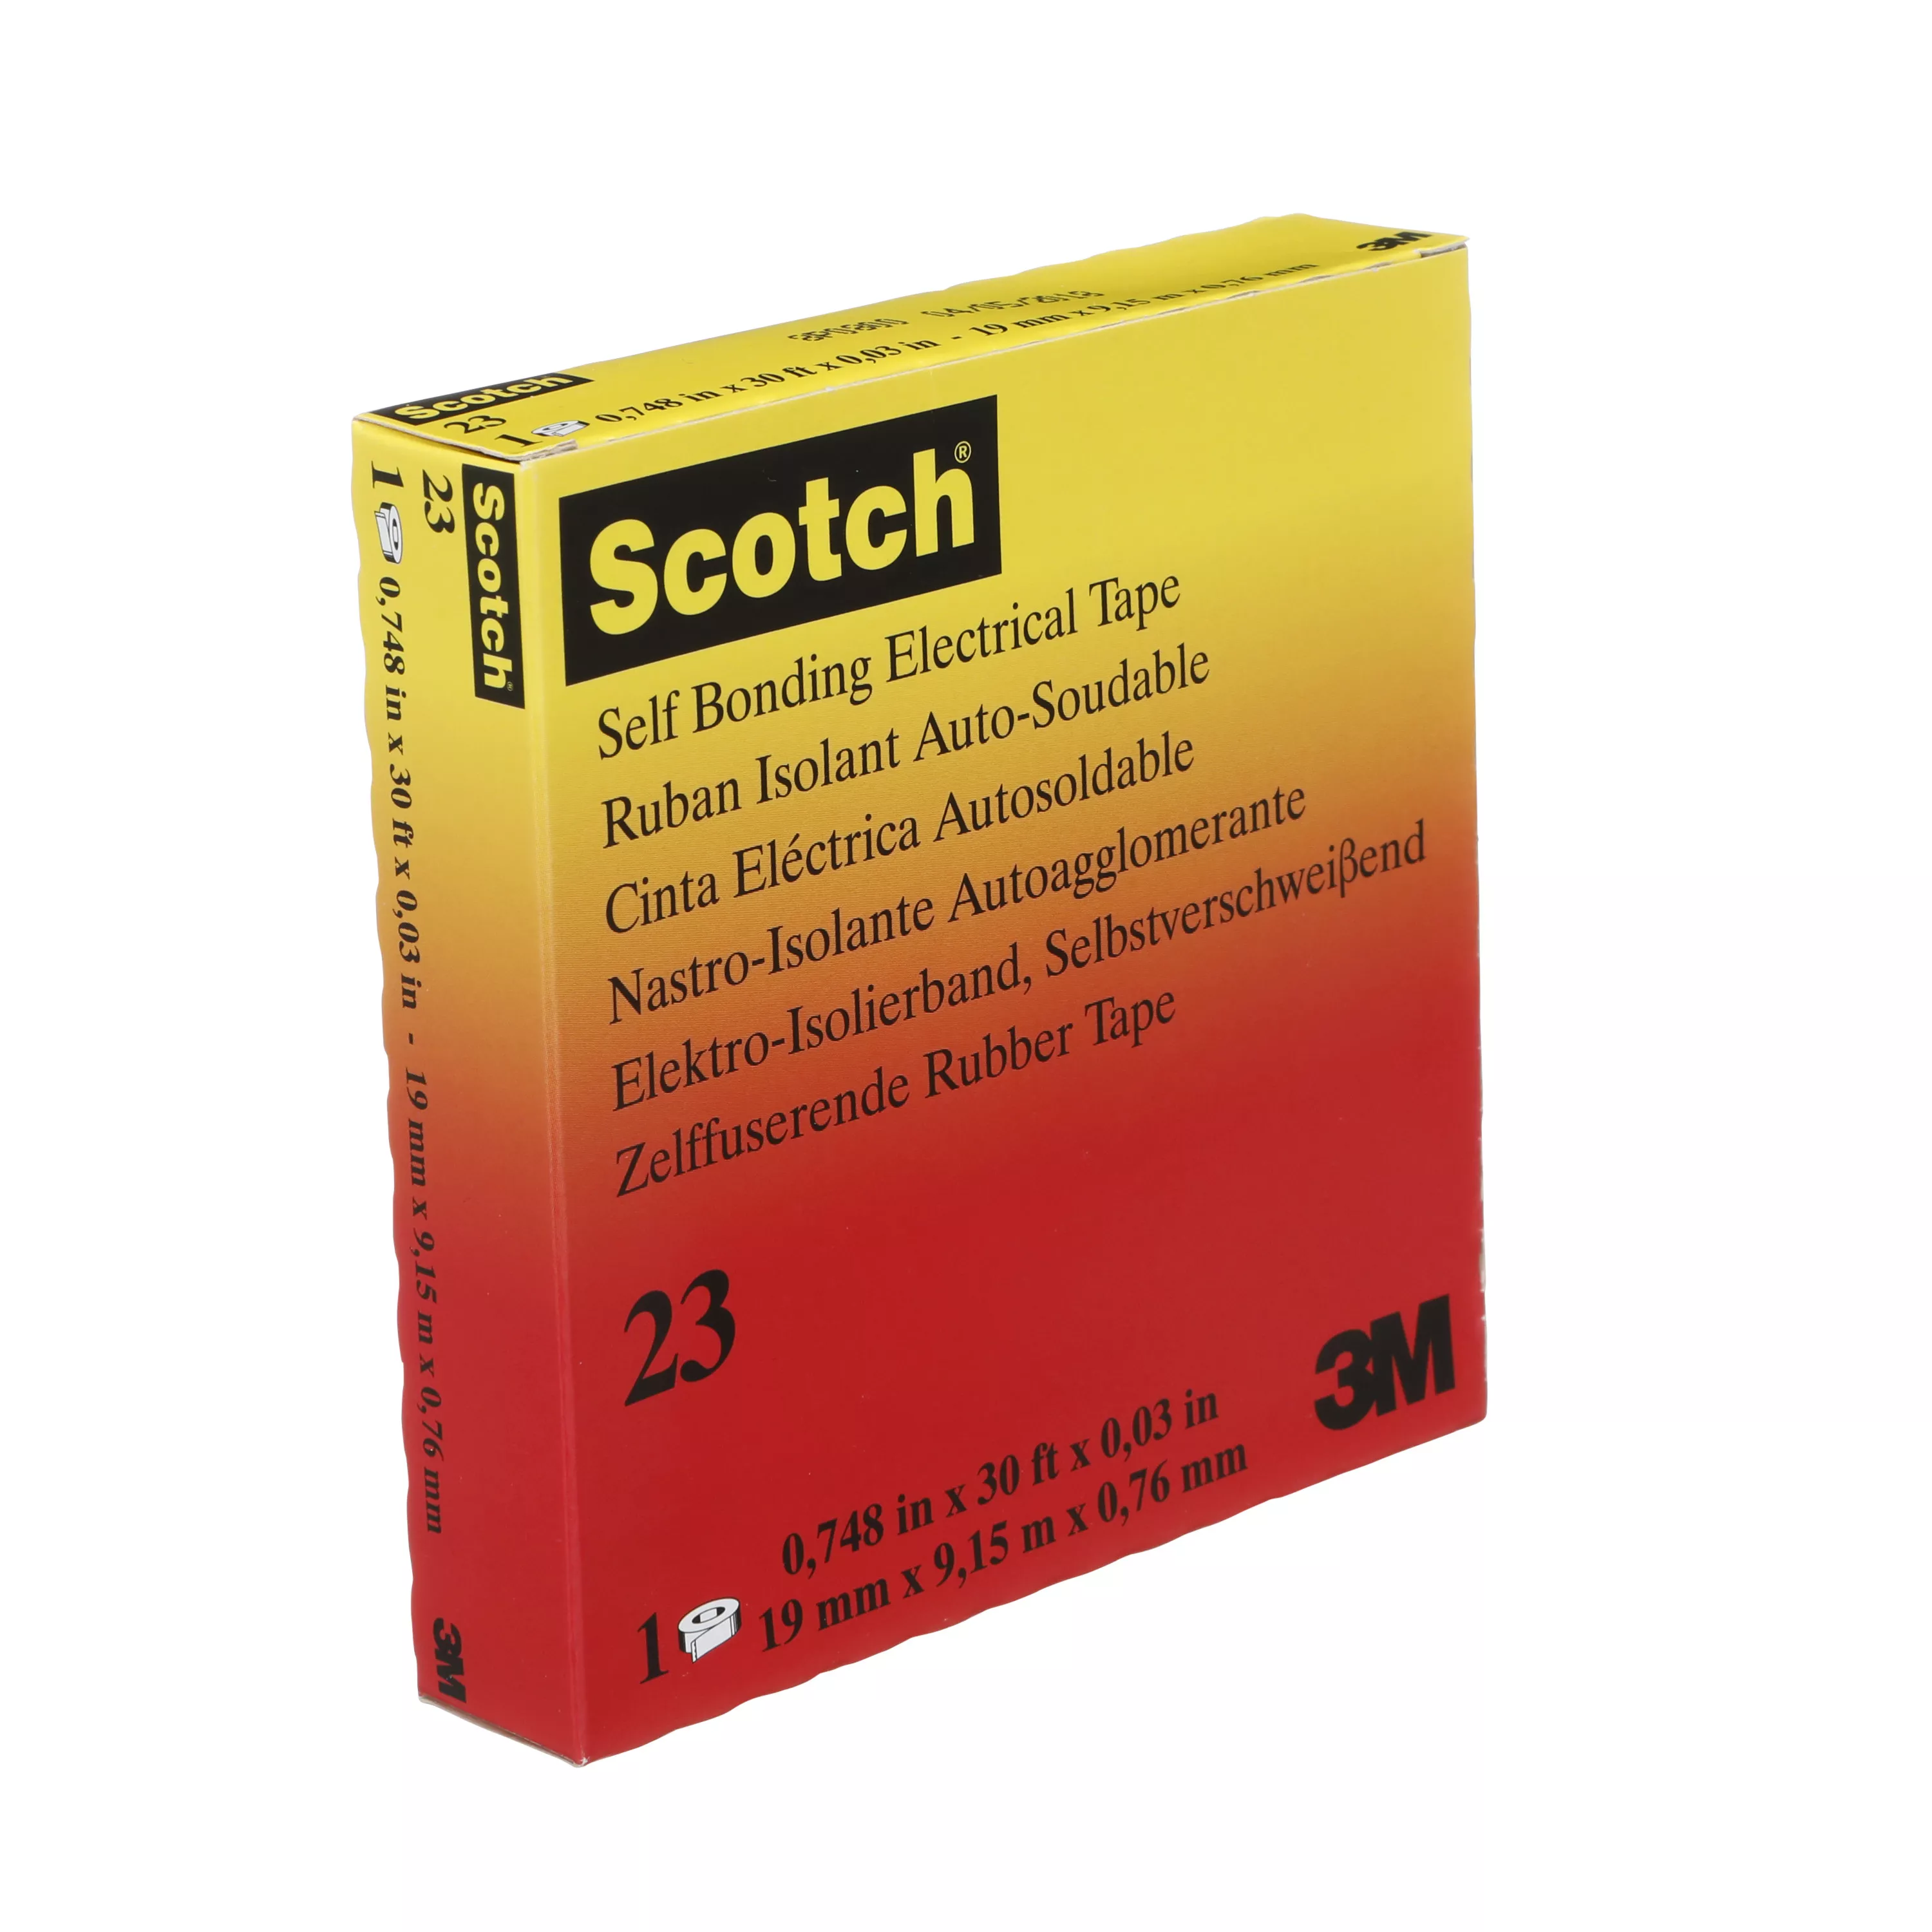 SKU 7000007286 | Scotch® Rubber Splicing Tape 23